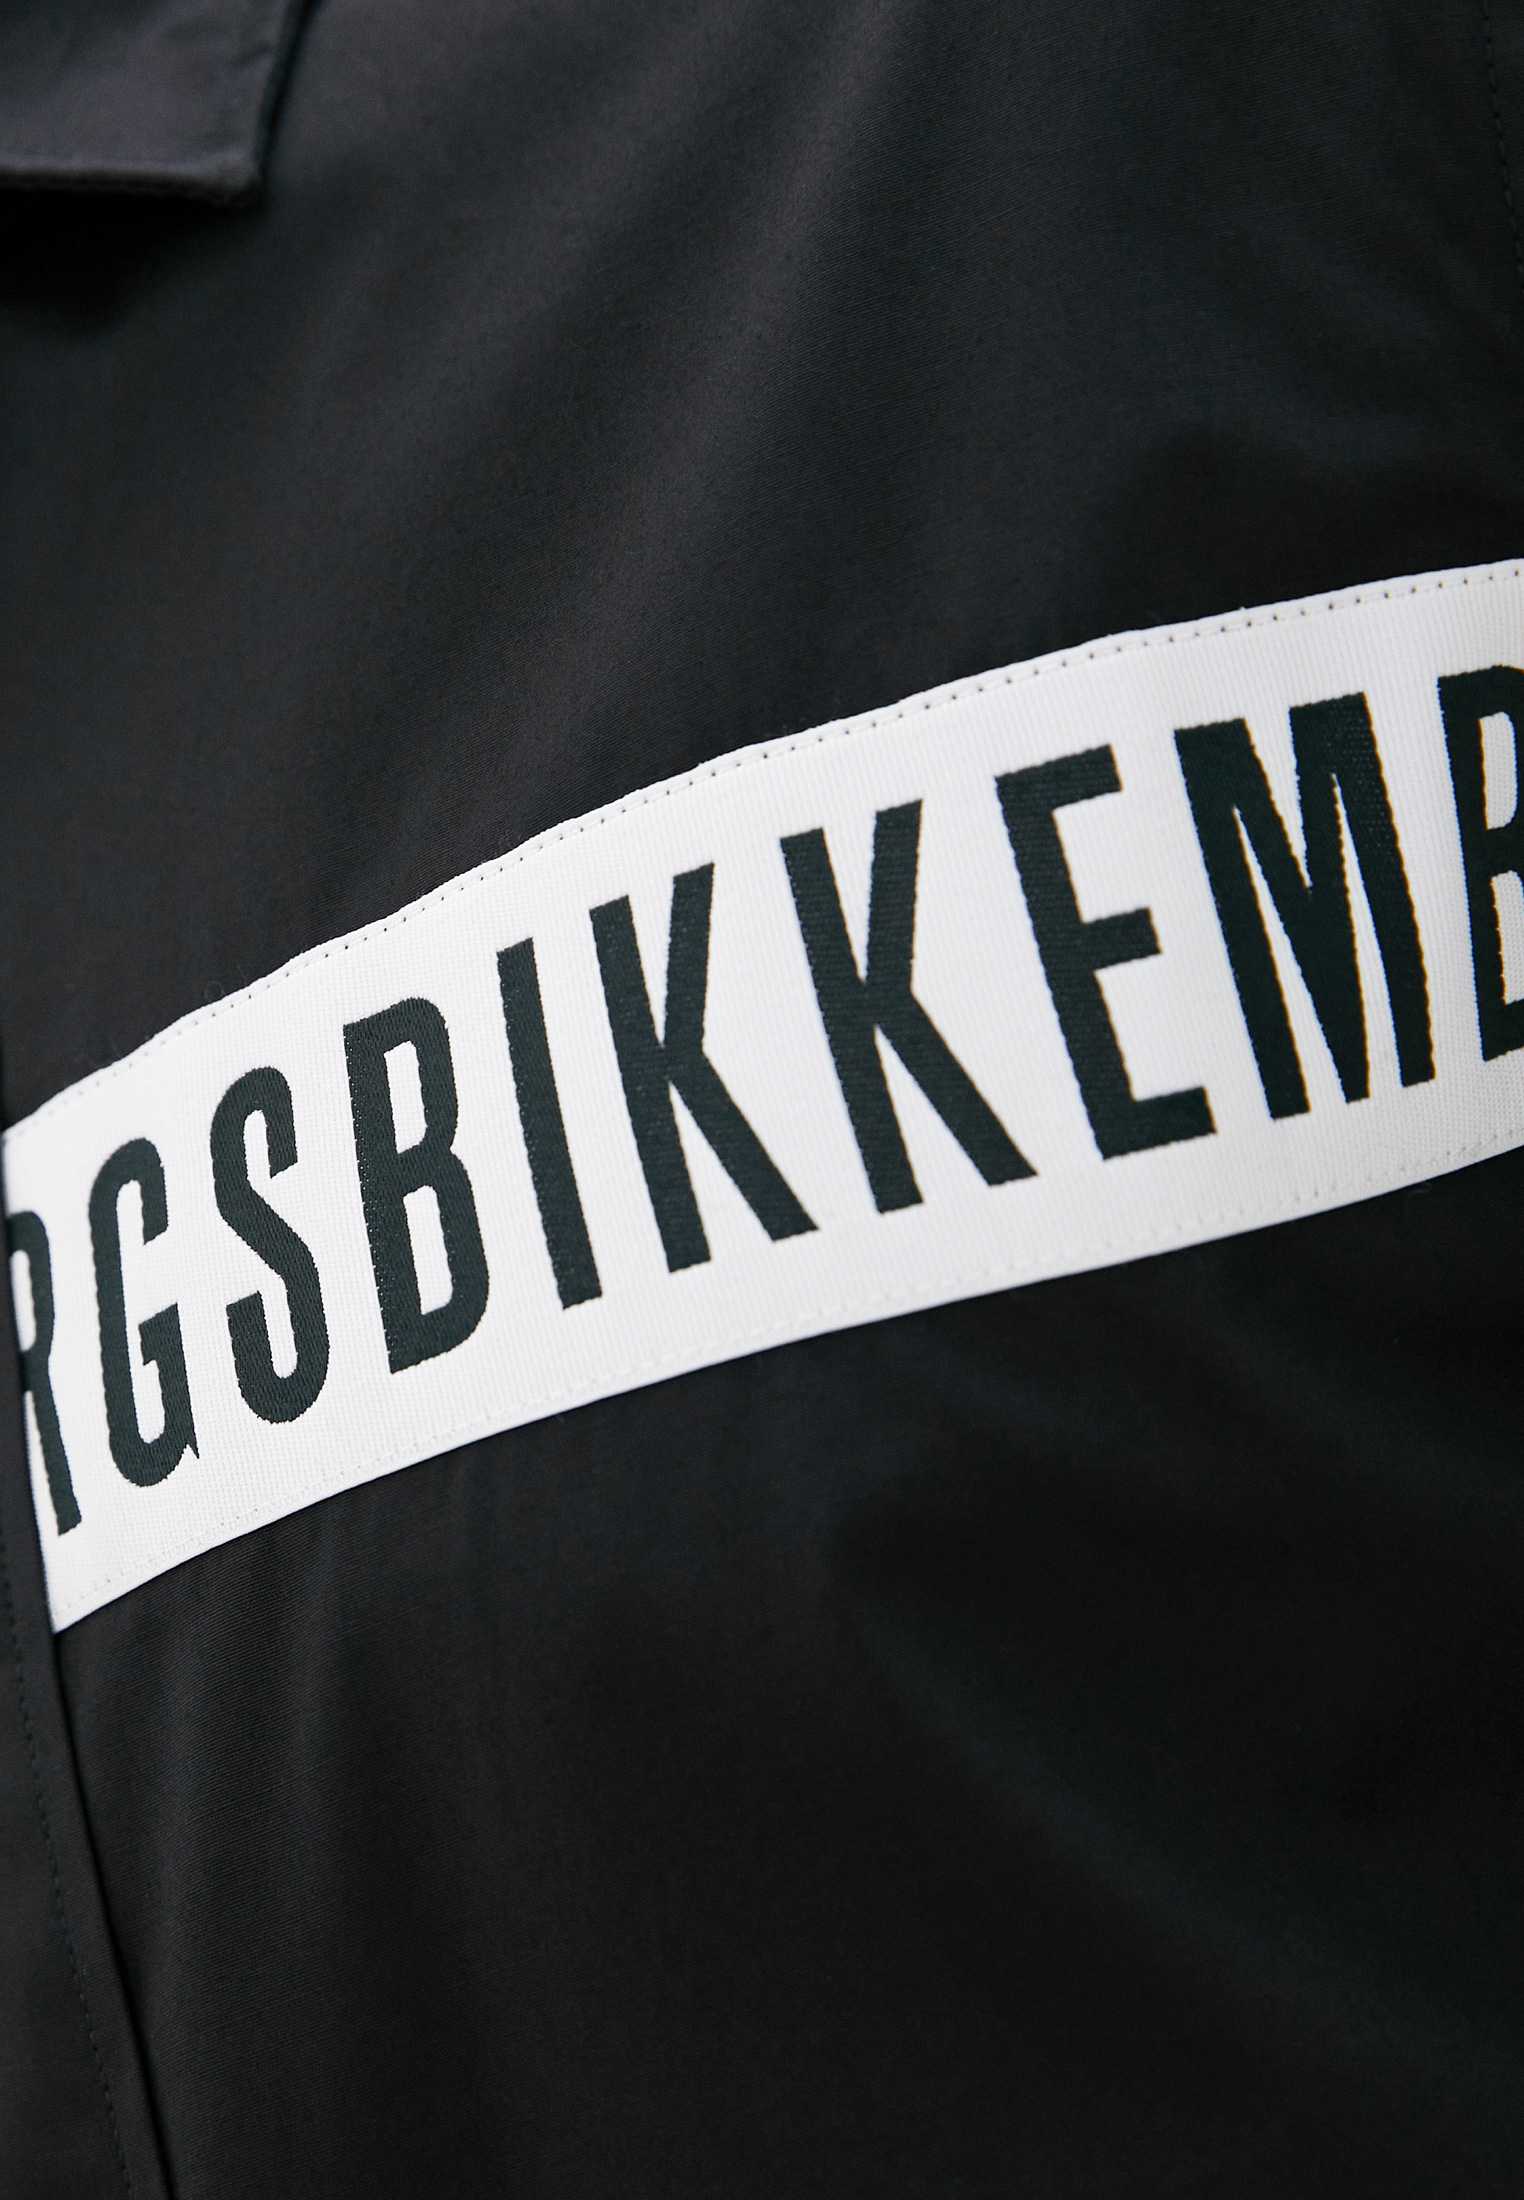 Рубашка с длинным рукавом Bikkembergs (Биккембергс) C C 055 80 S 2931: изображение 5